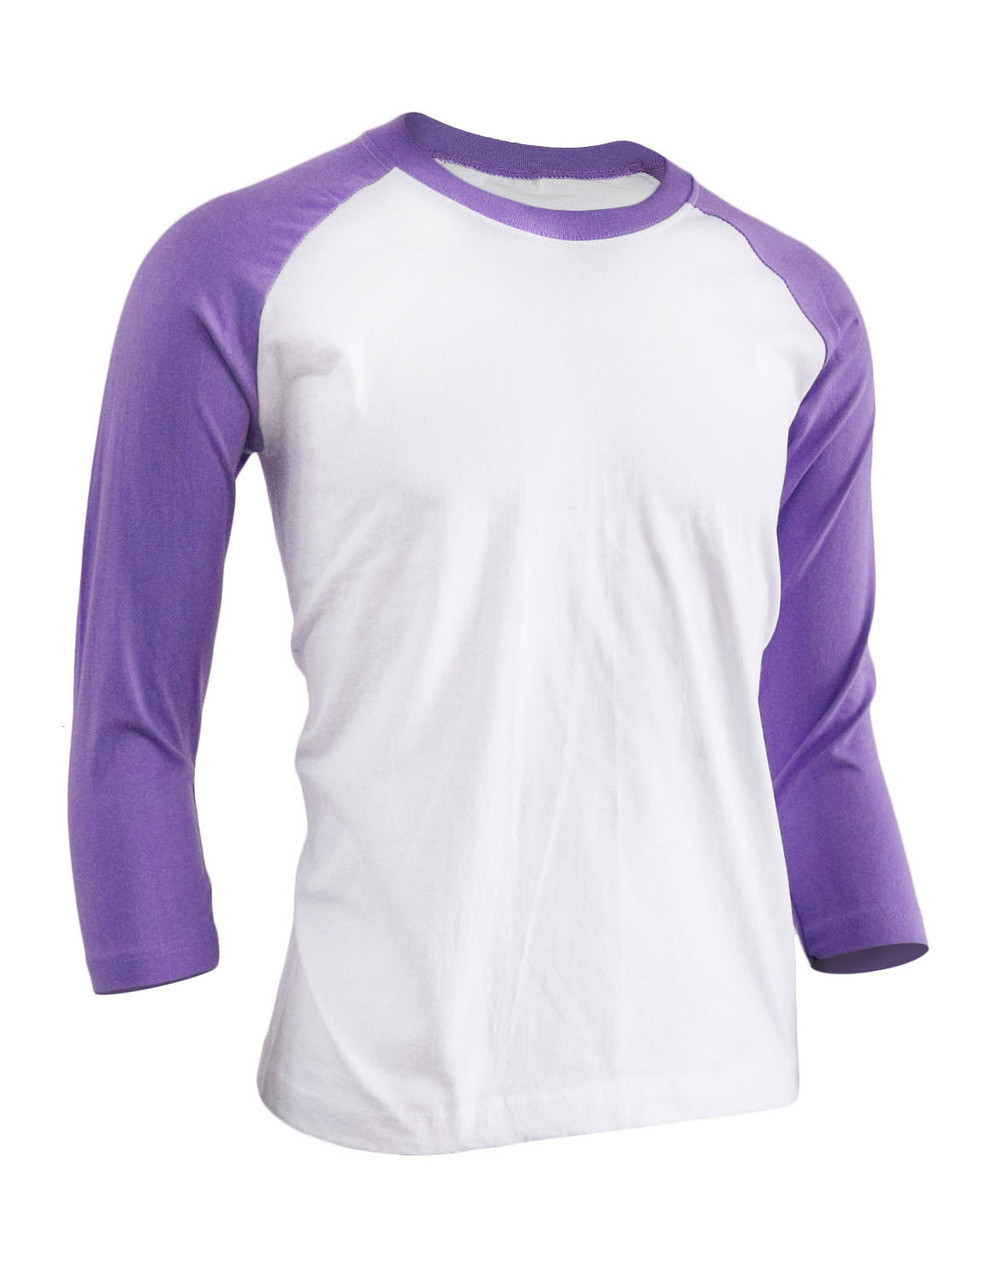 T-Shirt-- COLOR PURPLE--MEN & WOMEN Soft Plain Round Neck 100